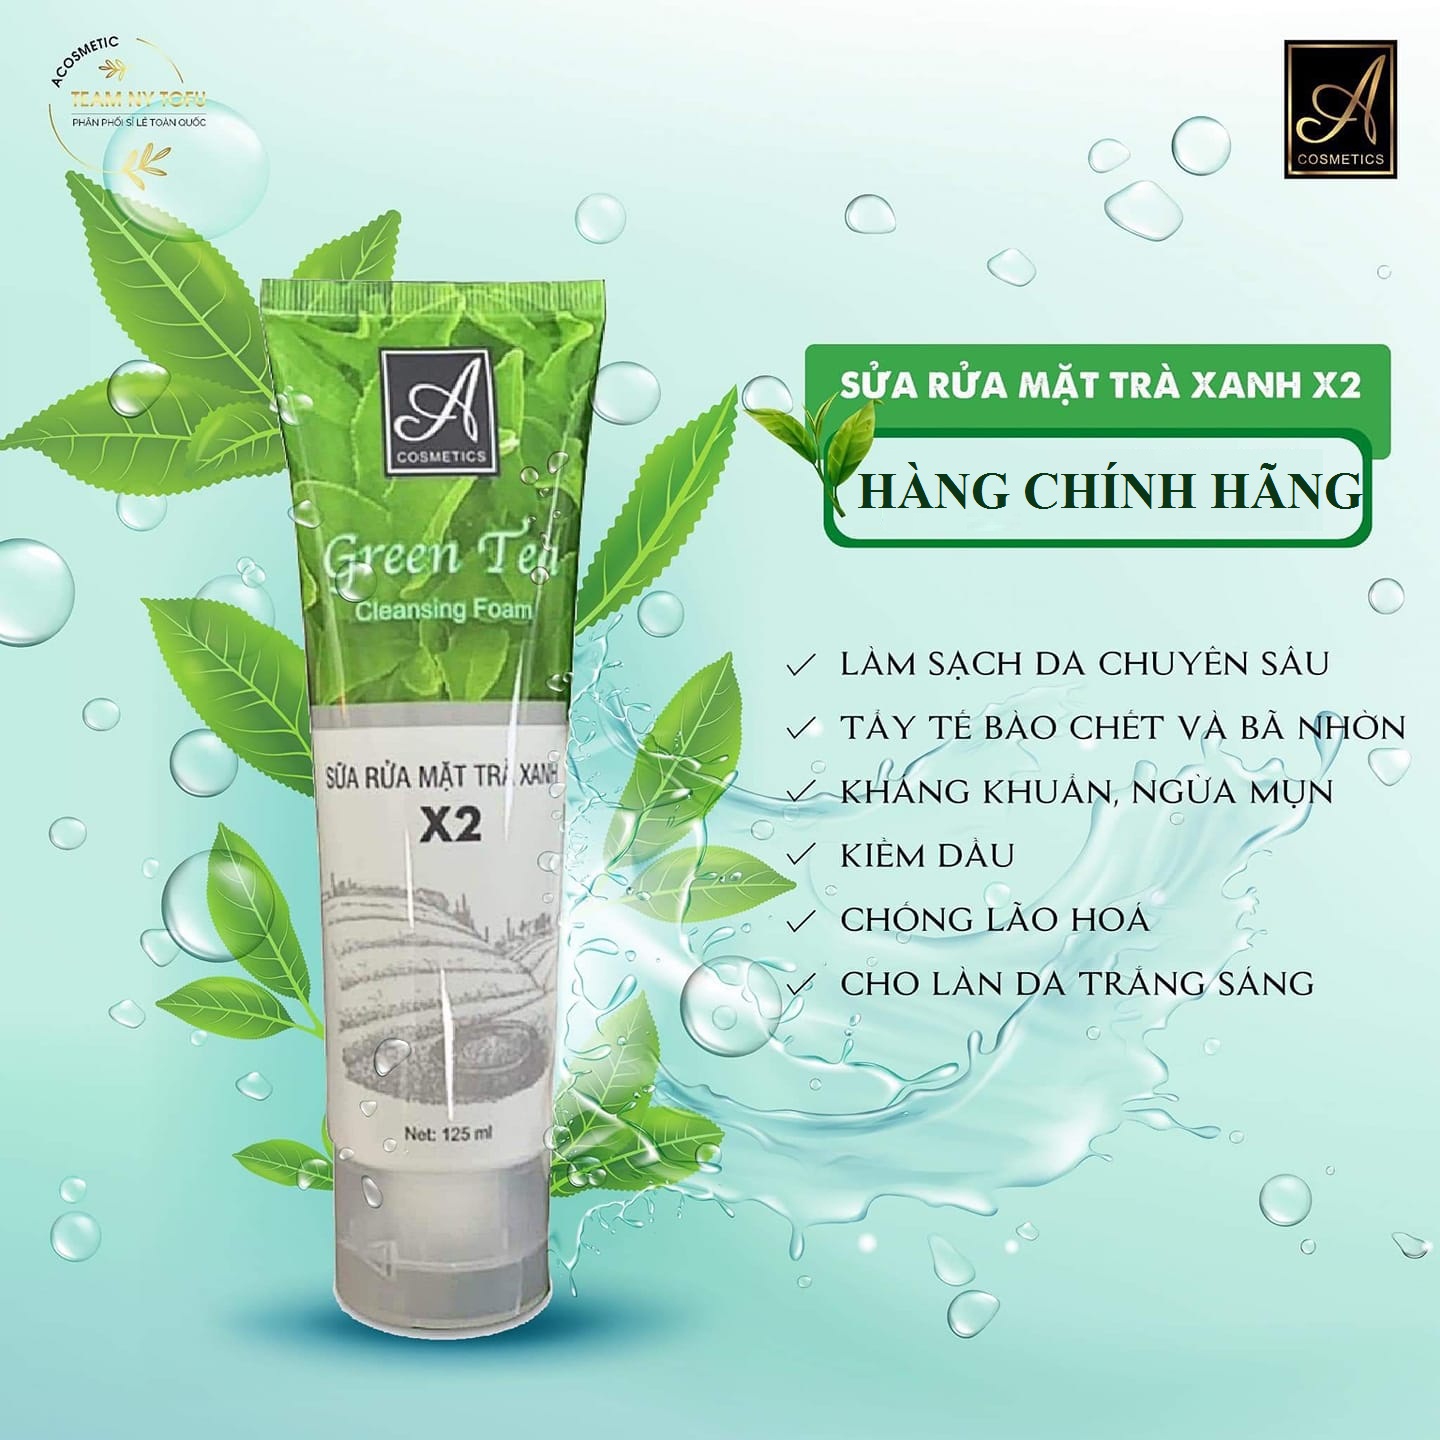 Sữa rửa mặt trà xanh A Cosmetics Green Tea x2 Acosmetic cleanning foam dành cho da dầu ngừa mụn Mỹ phẩm Phương Anh chính hãng 125ml